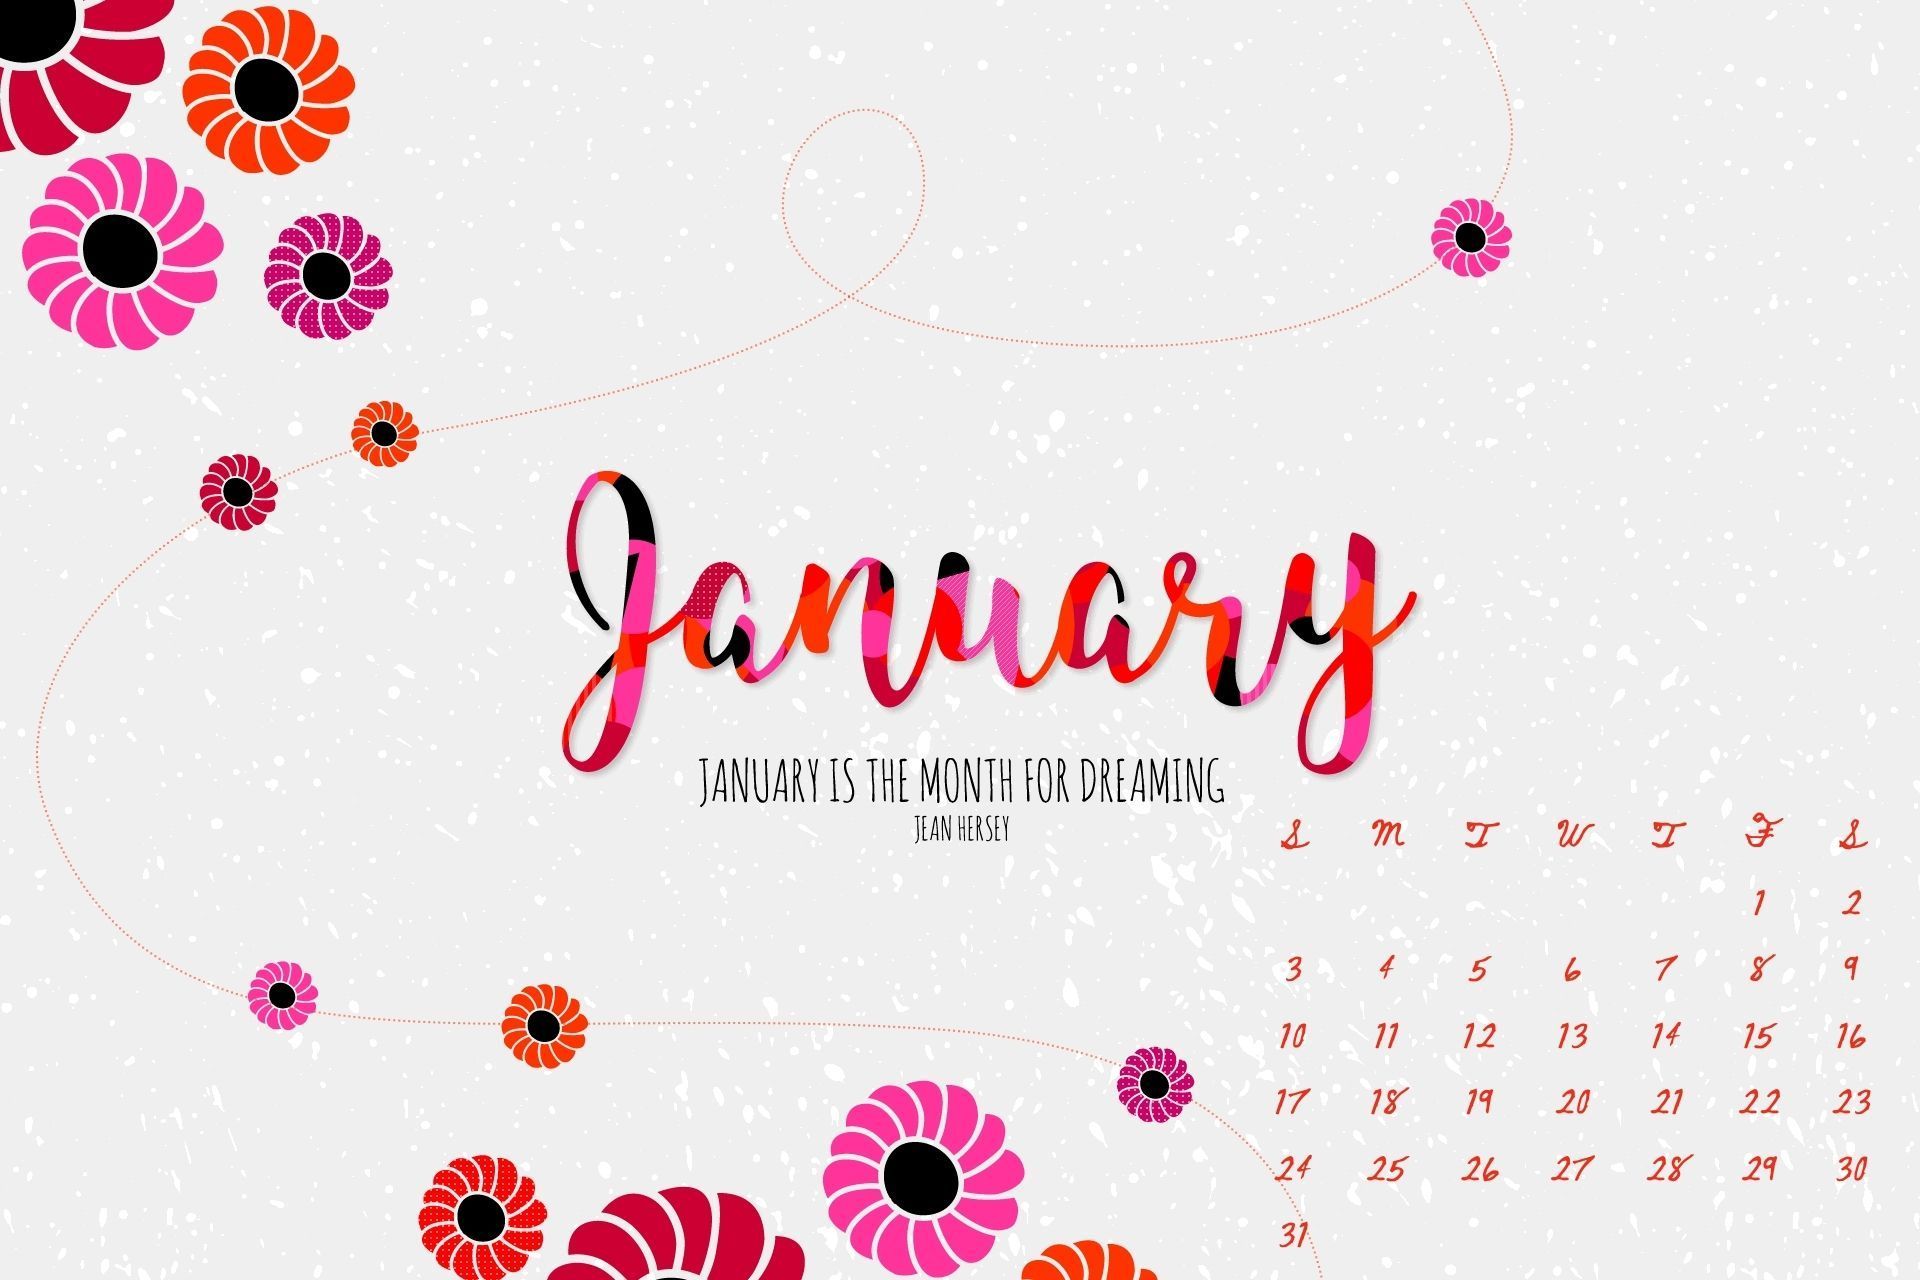 January 2021 Calendar Floral Wallpaper Download in high definition. Calendar wallpaper, 2021 calendar, Floral wallpaper